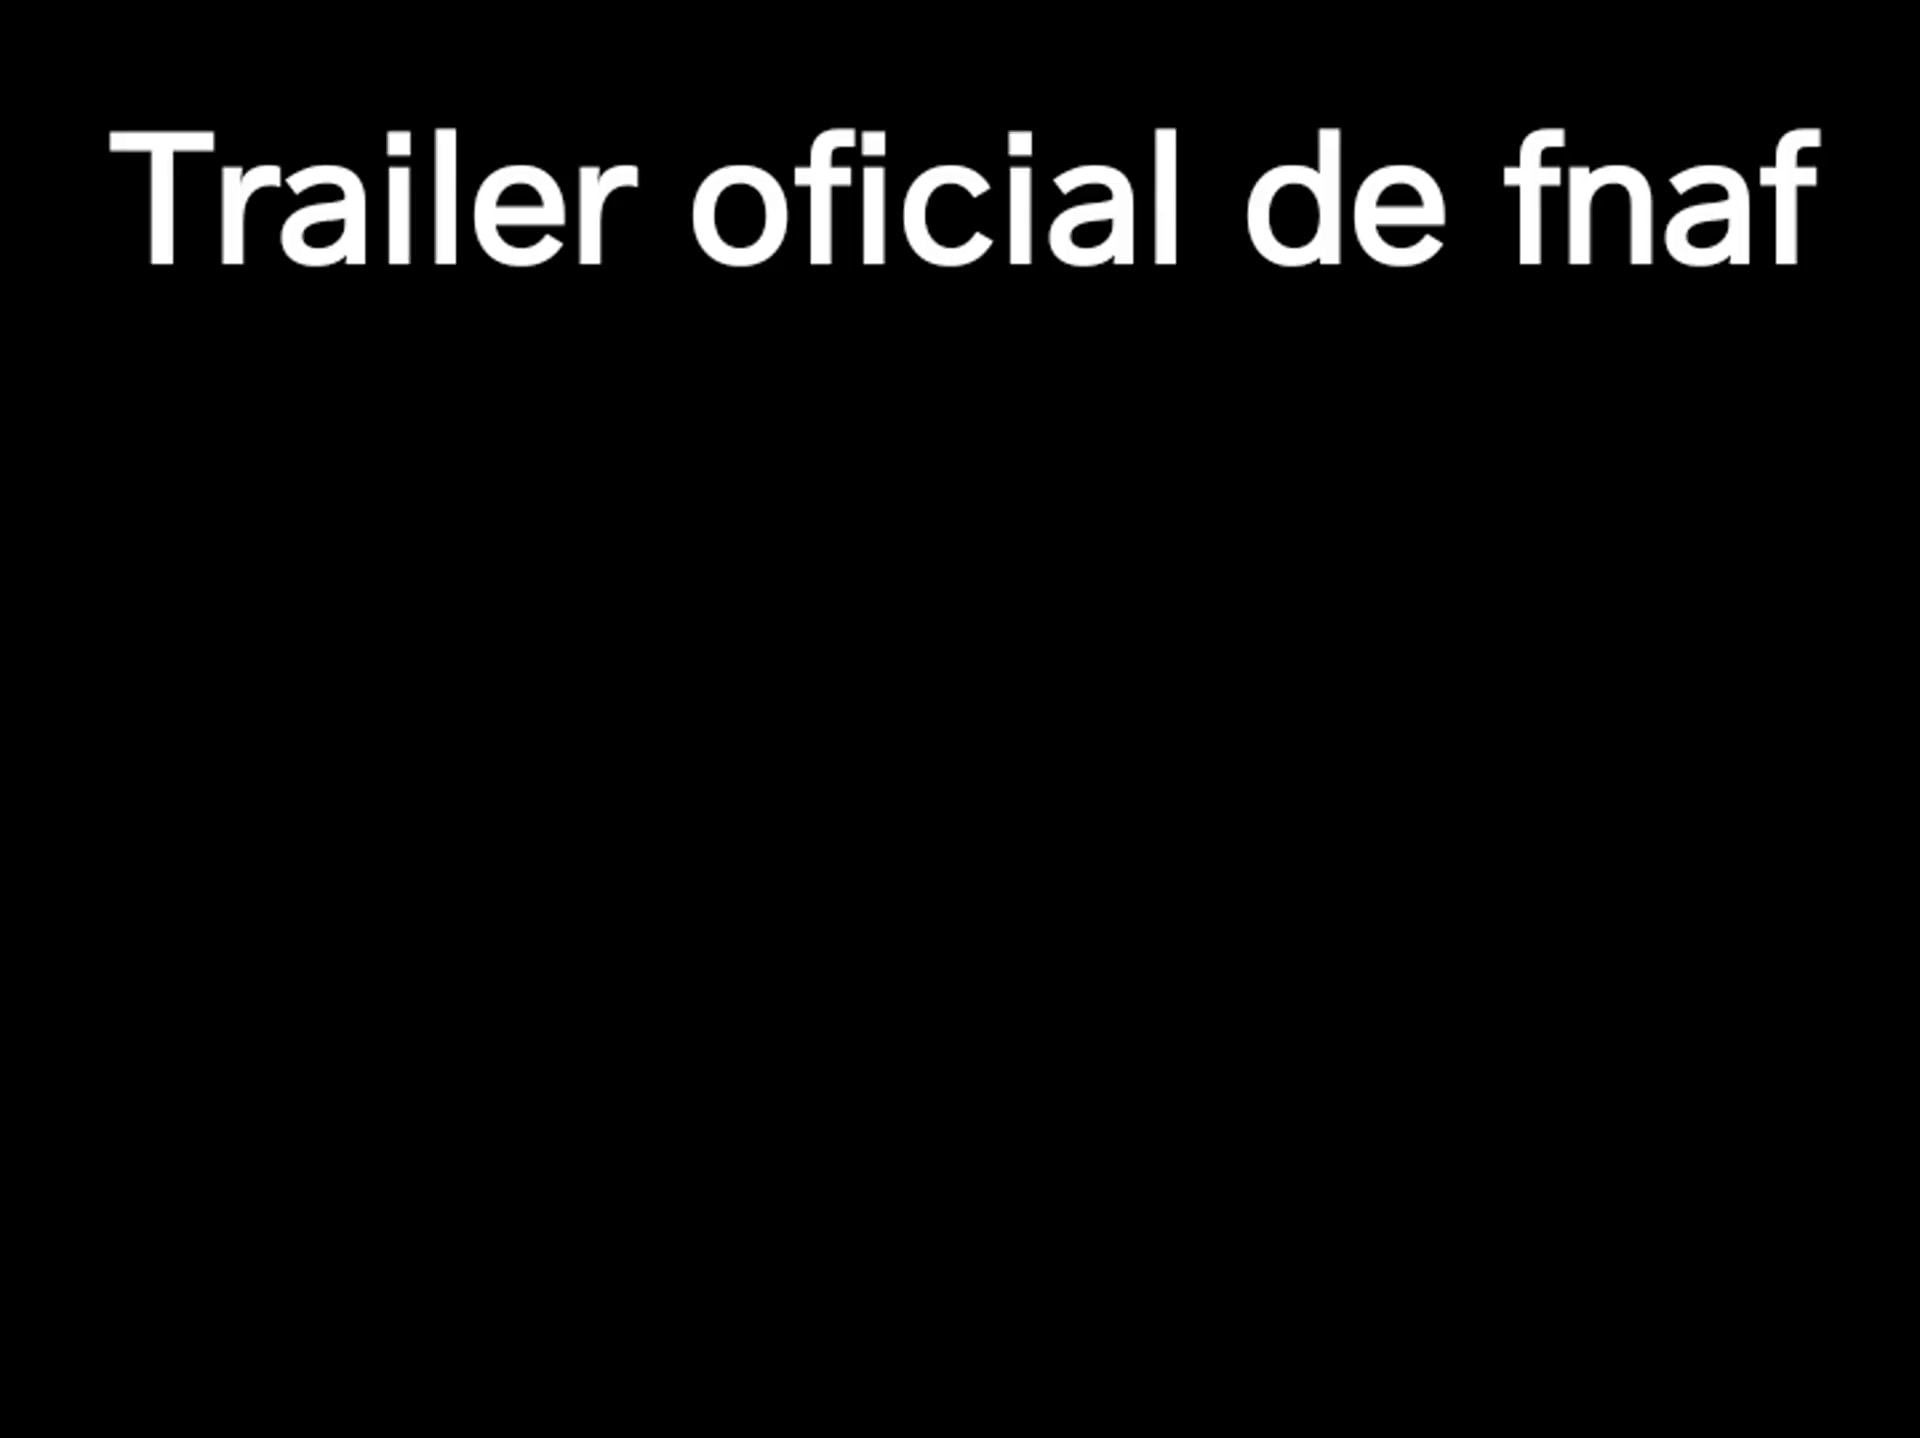 Simplismente o trailer do filme do FNAF coloquei a musica meu tempo  acabou - iFunny Brazil